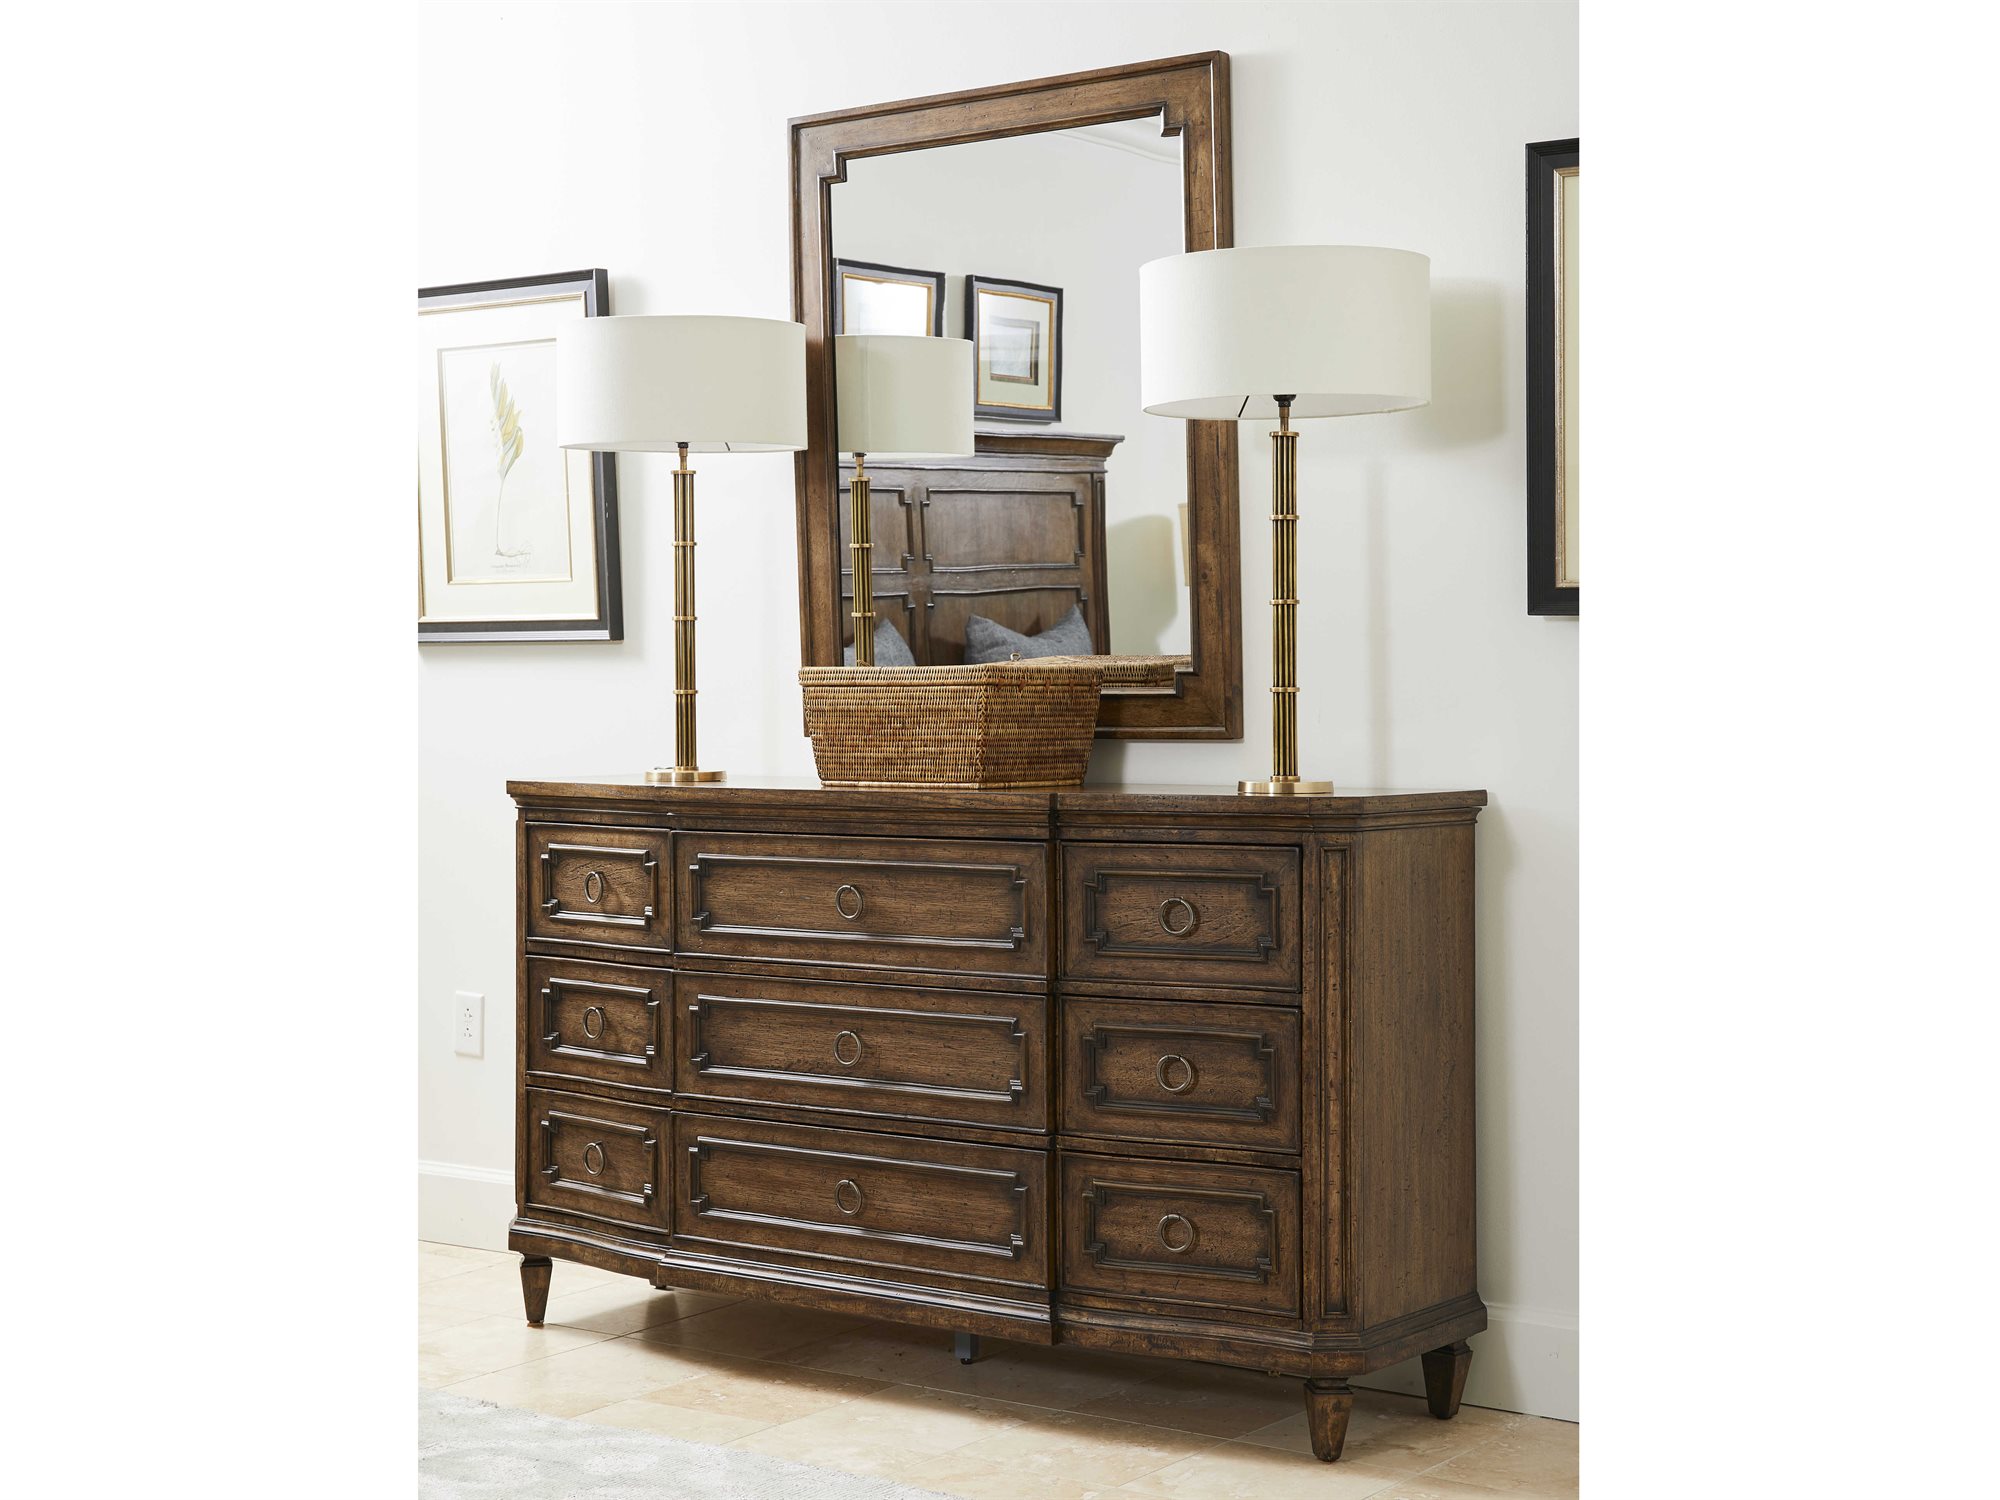 Stanley Furniture Hillside Triple Dresser With Mirror Sl811c305set